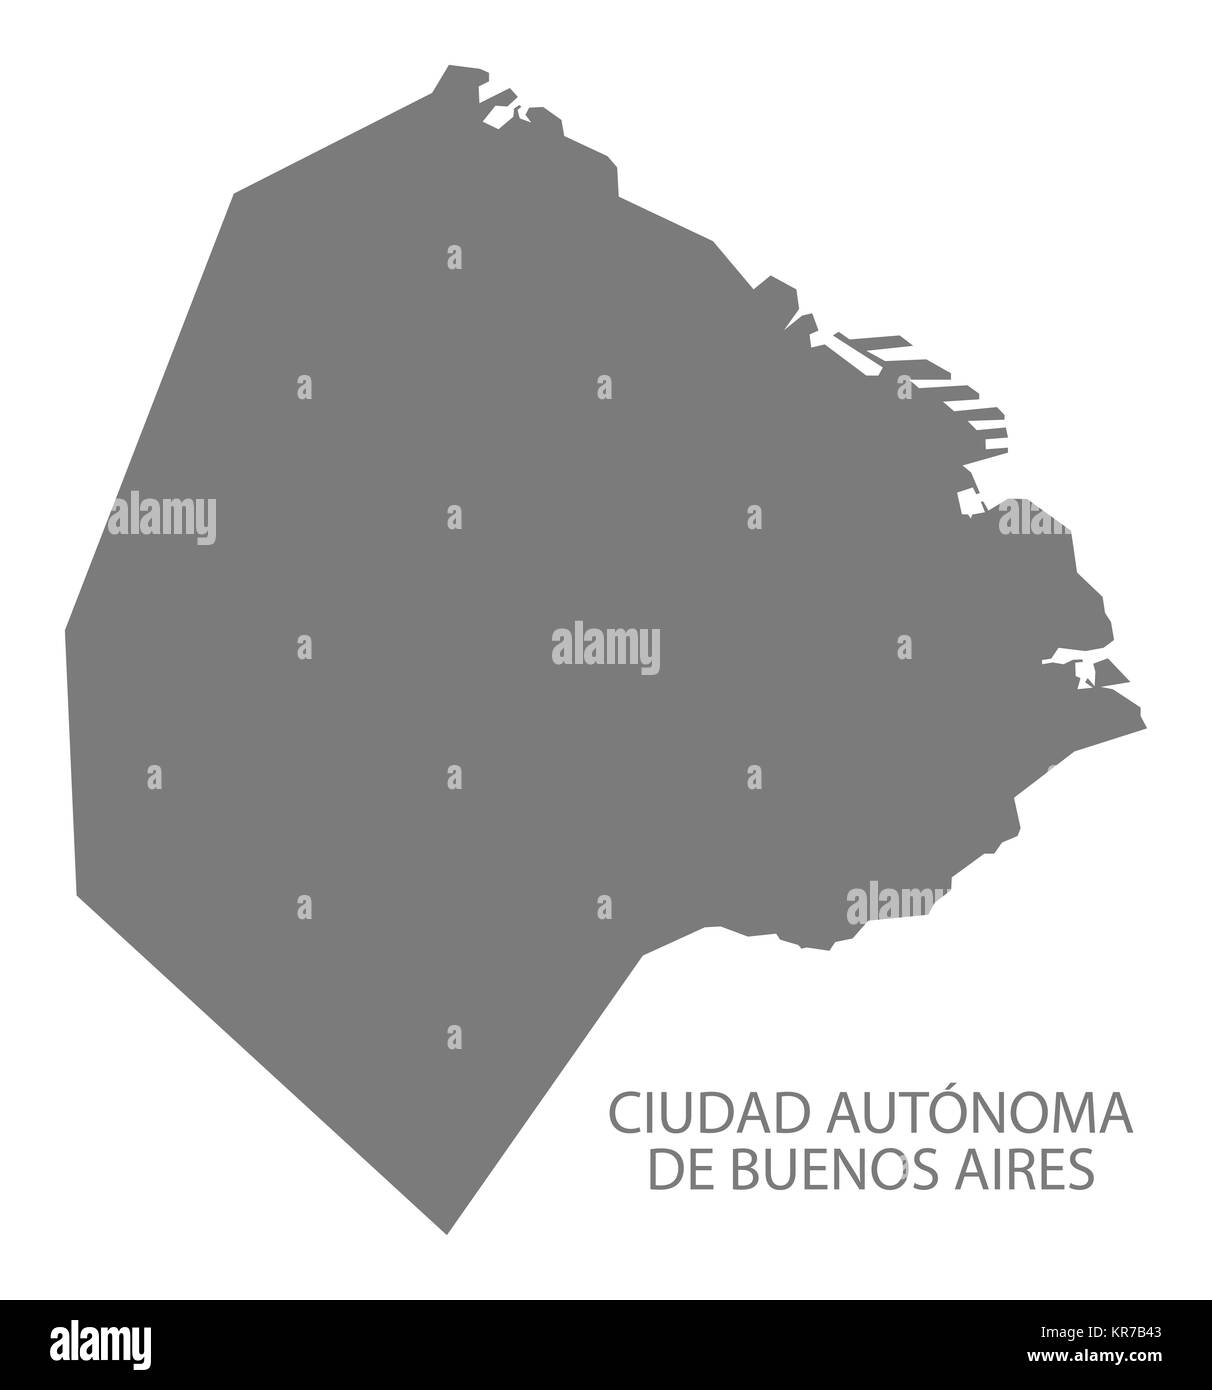 Ciudad Autonoma de Buenos Aires Argentina Map grey Stock Photo